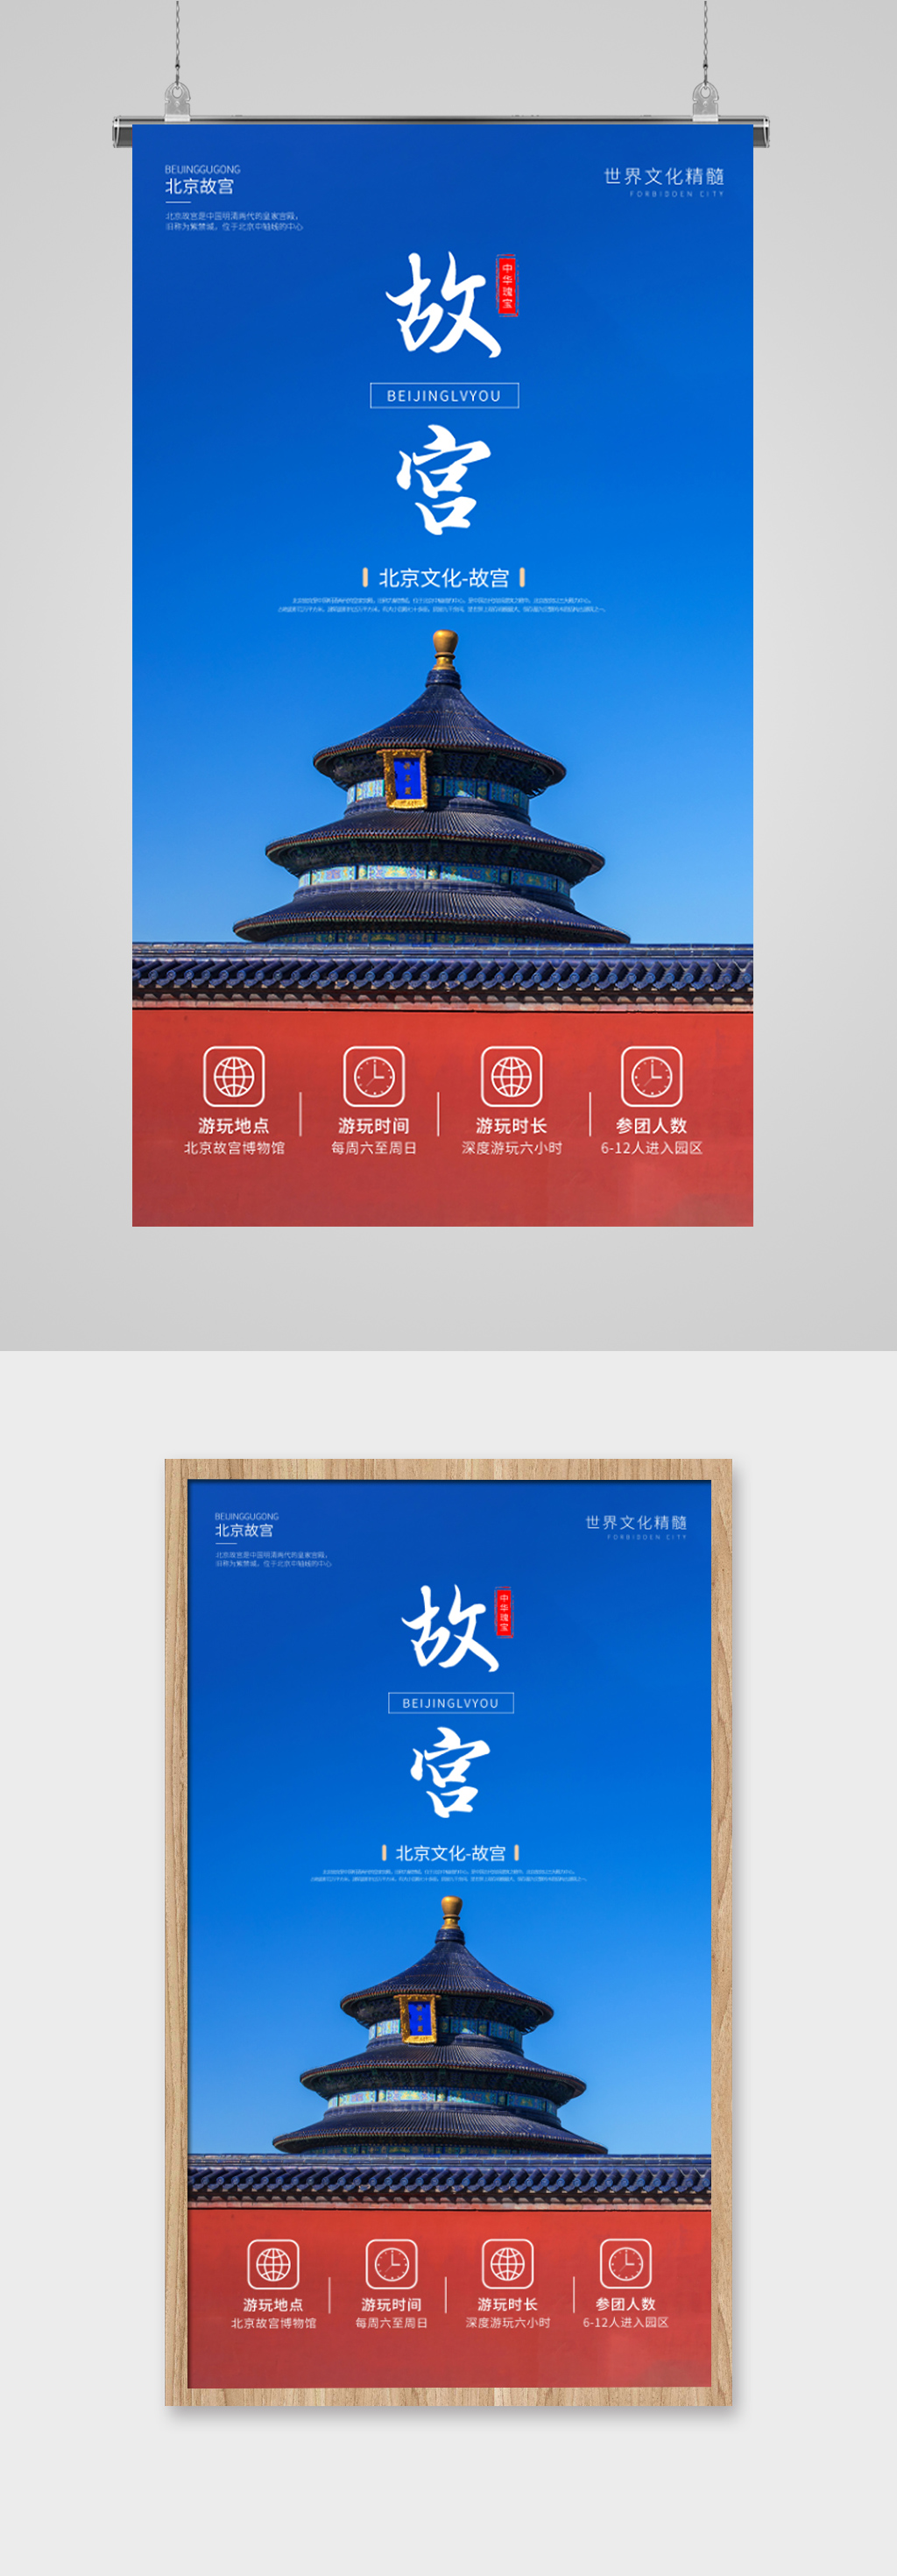 北京故宫旅游景点宣传海报